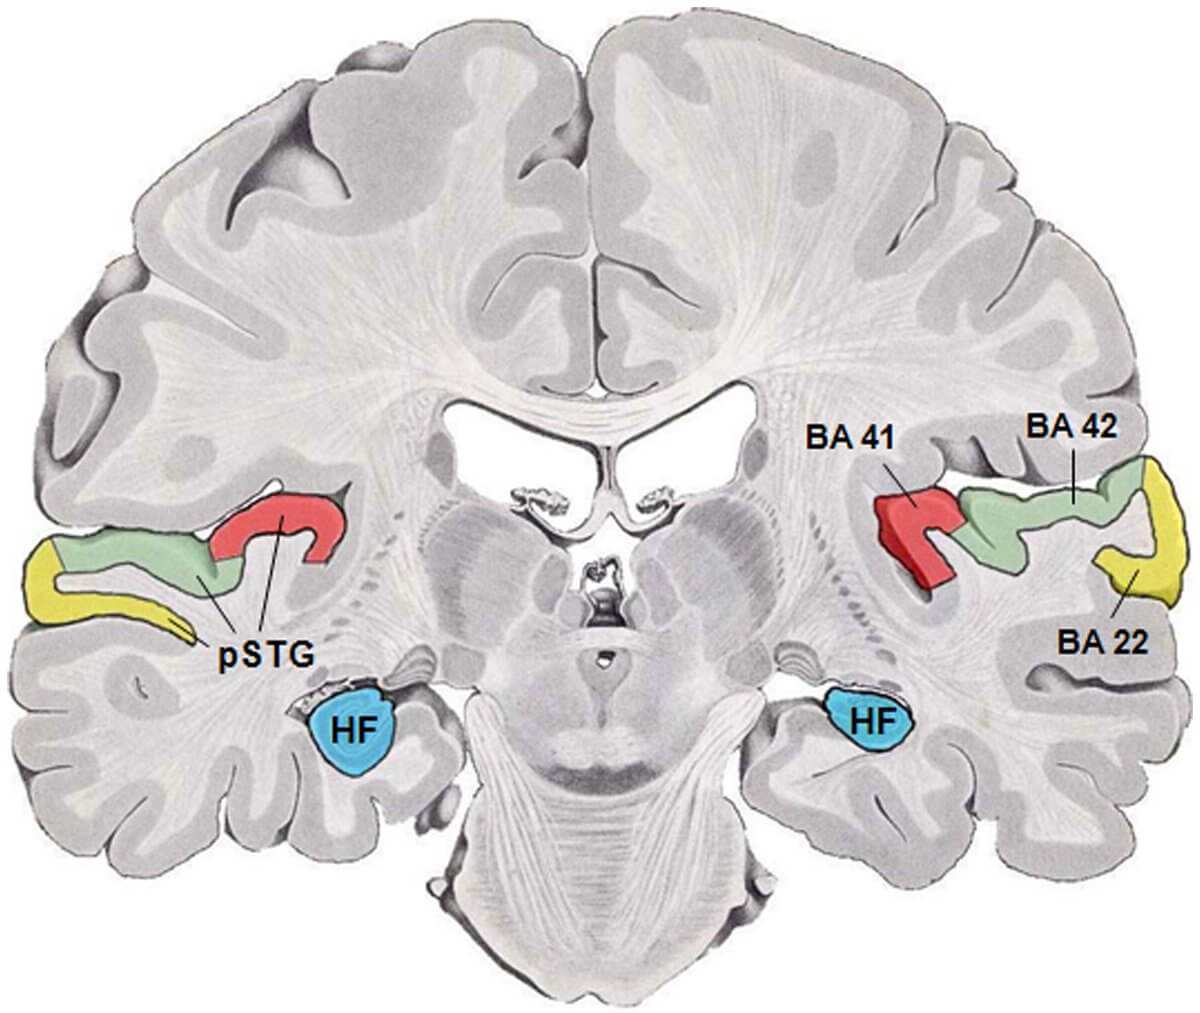 Title: Human temporal lobe areas | Author: Talbot K, Louneva N, Cohen JW, Kazi H, Blake DJ, et al. | Source: doi: 10.1371/journal.pone.0016886 | License: CC BY 2.5